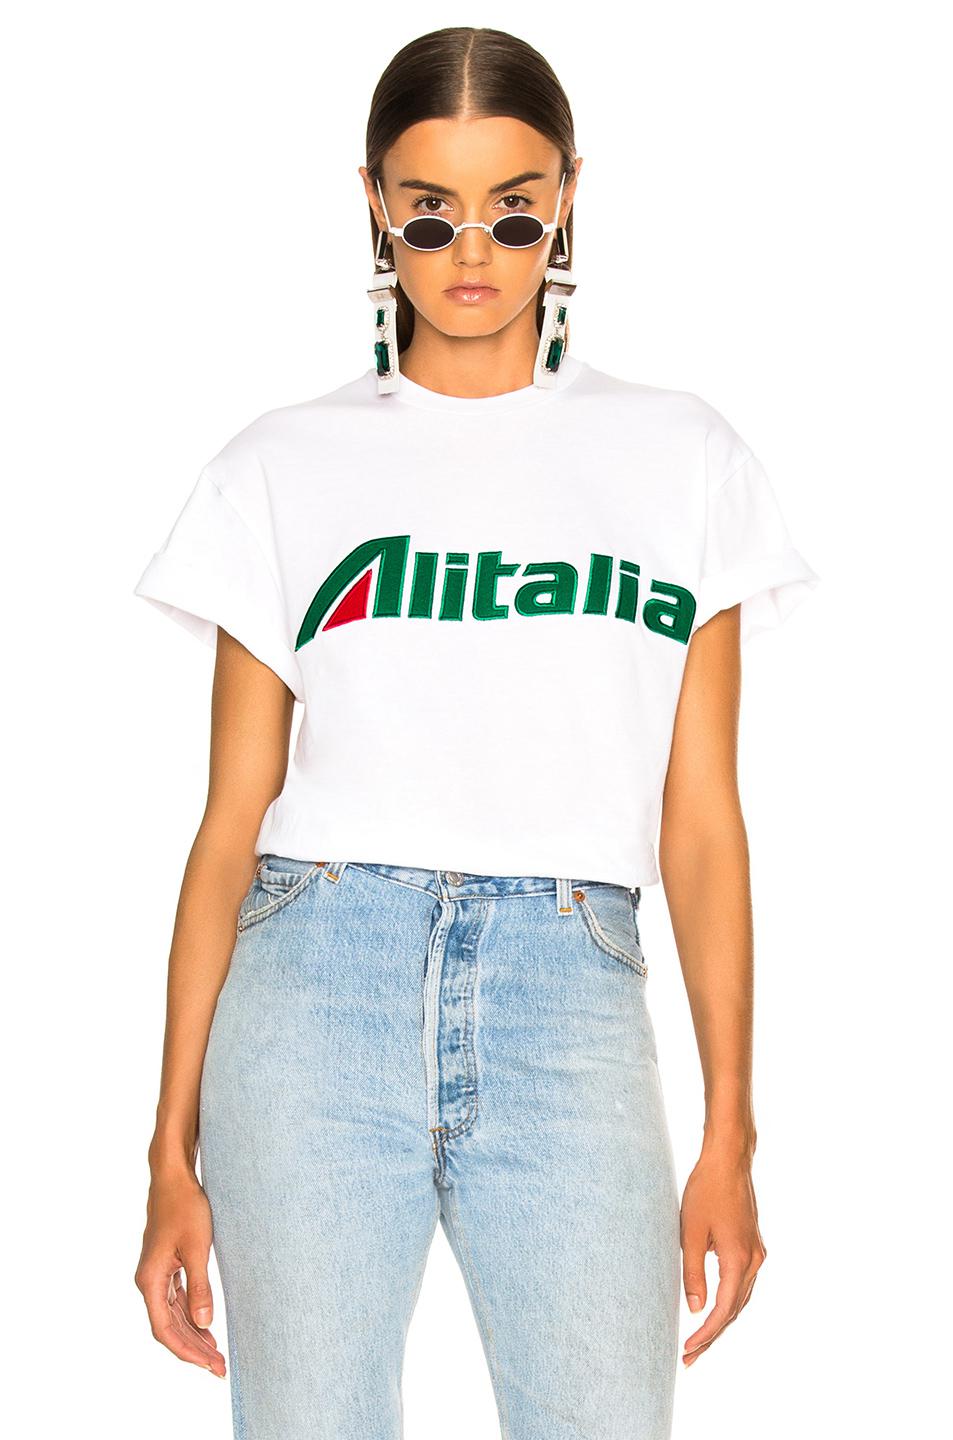 Alberta Ferretti "alitalia" Embroidered Cotton Jersey T-shirt in White -  Lyst